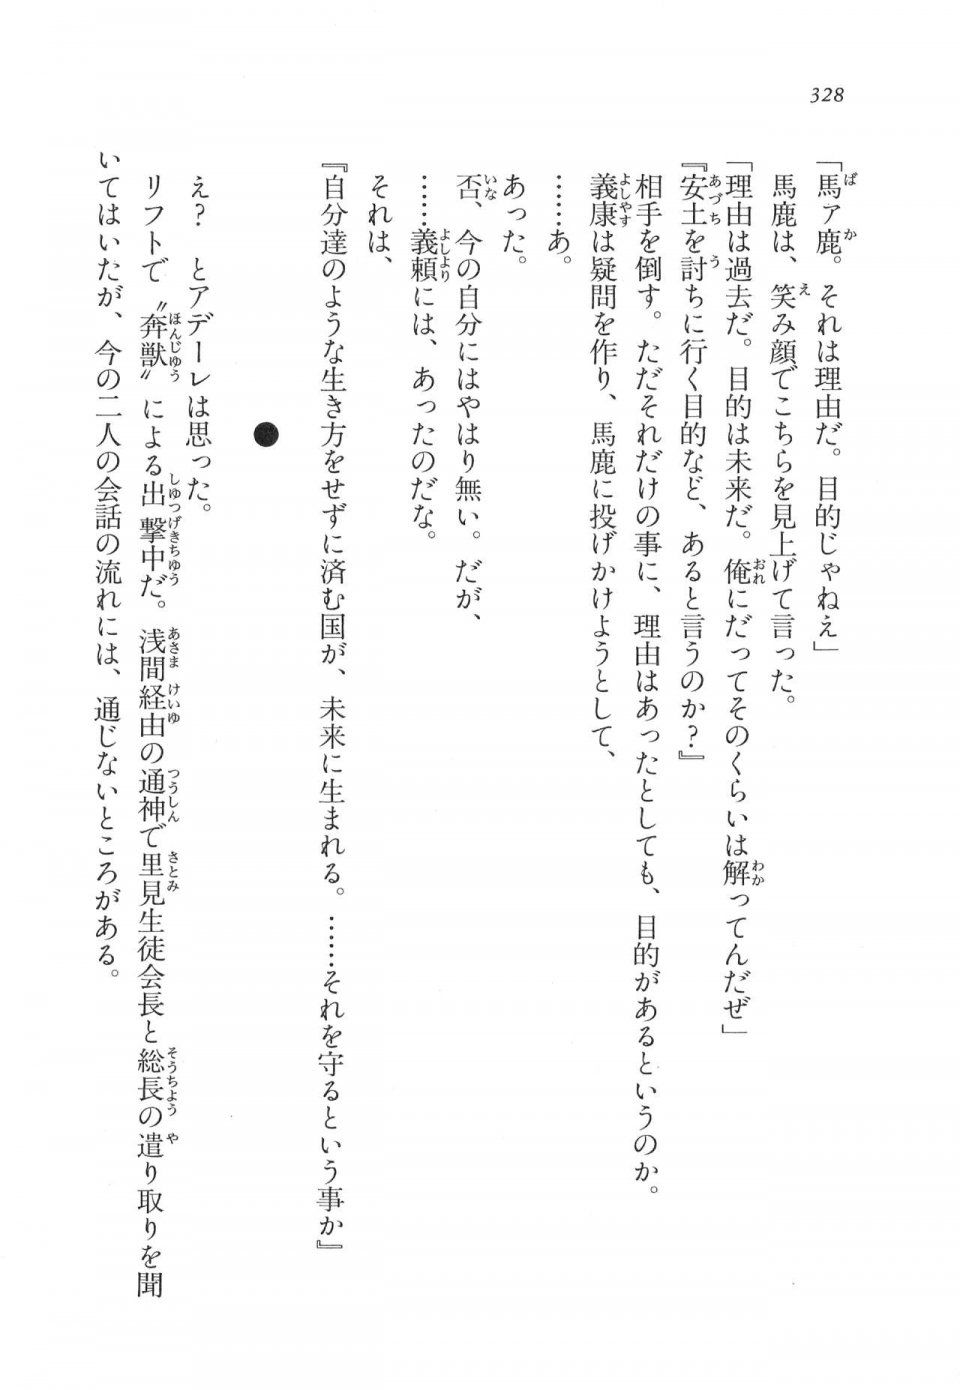 Kyoukai Senjou no Horizon LN Vol 11(5A) - Photo #328